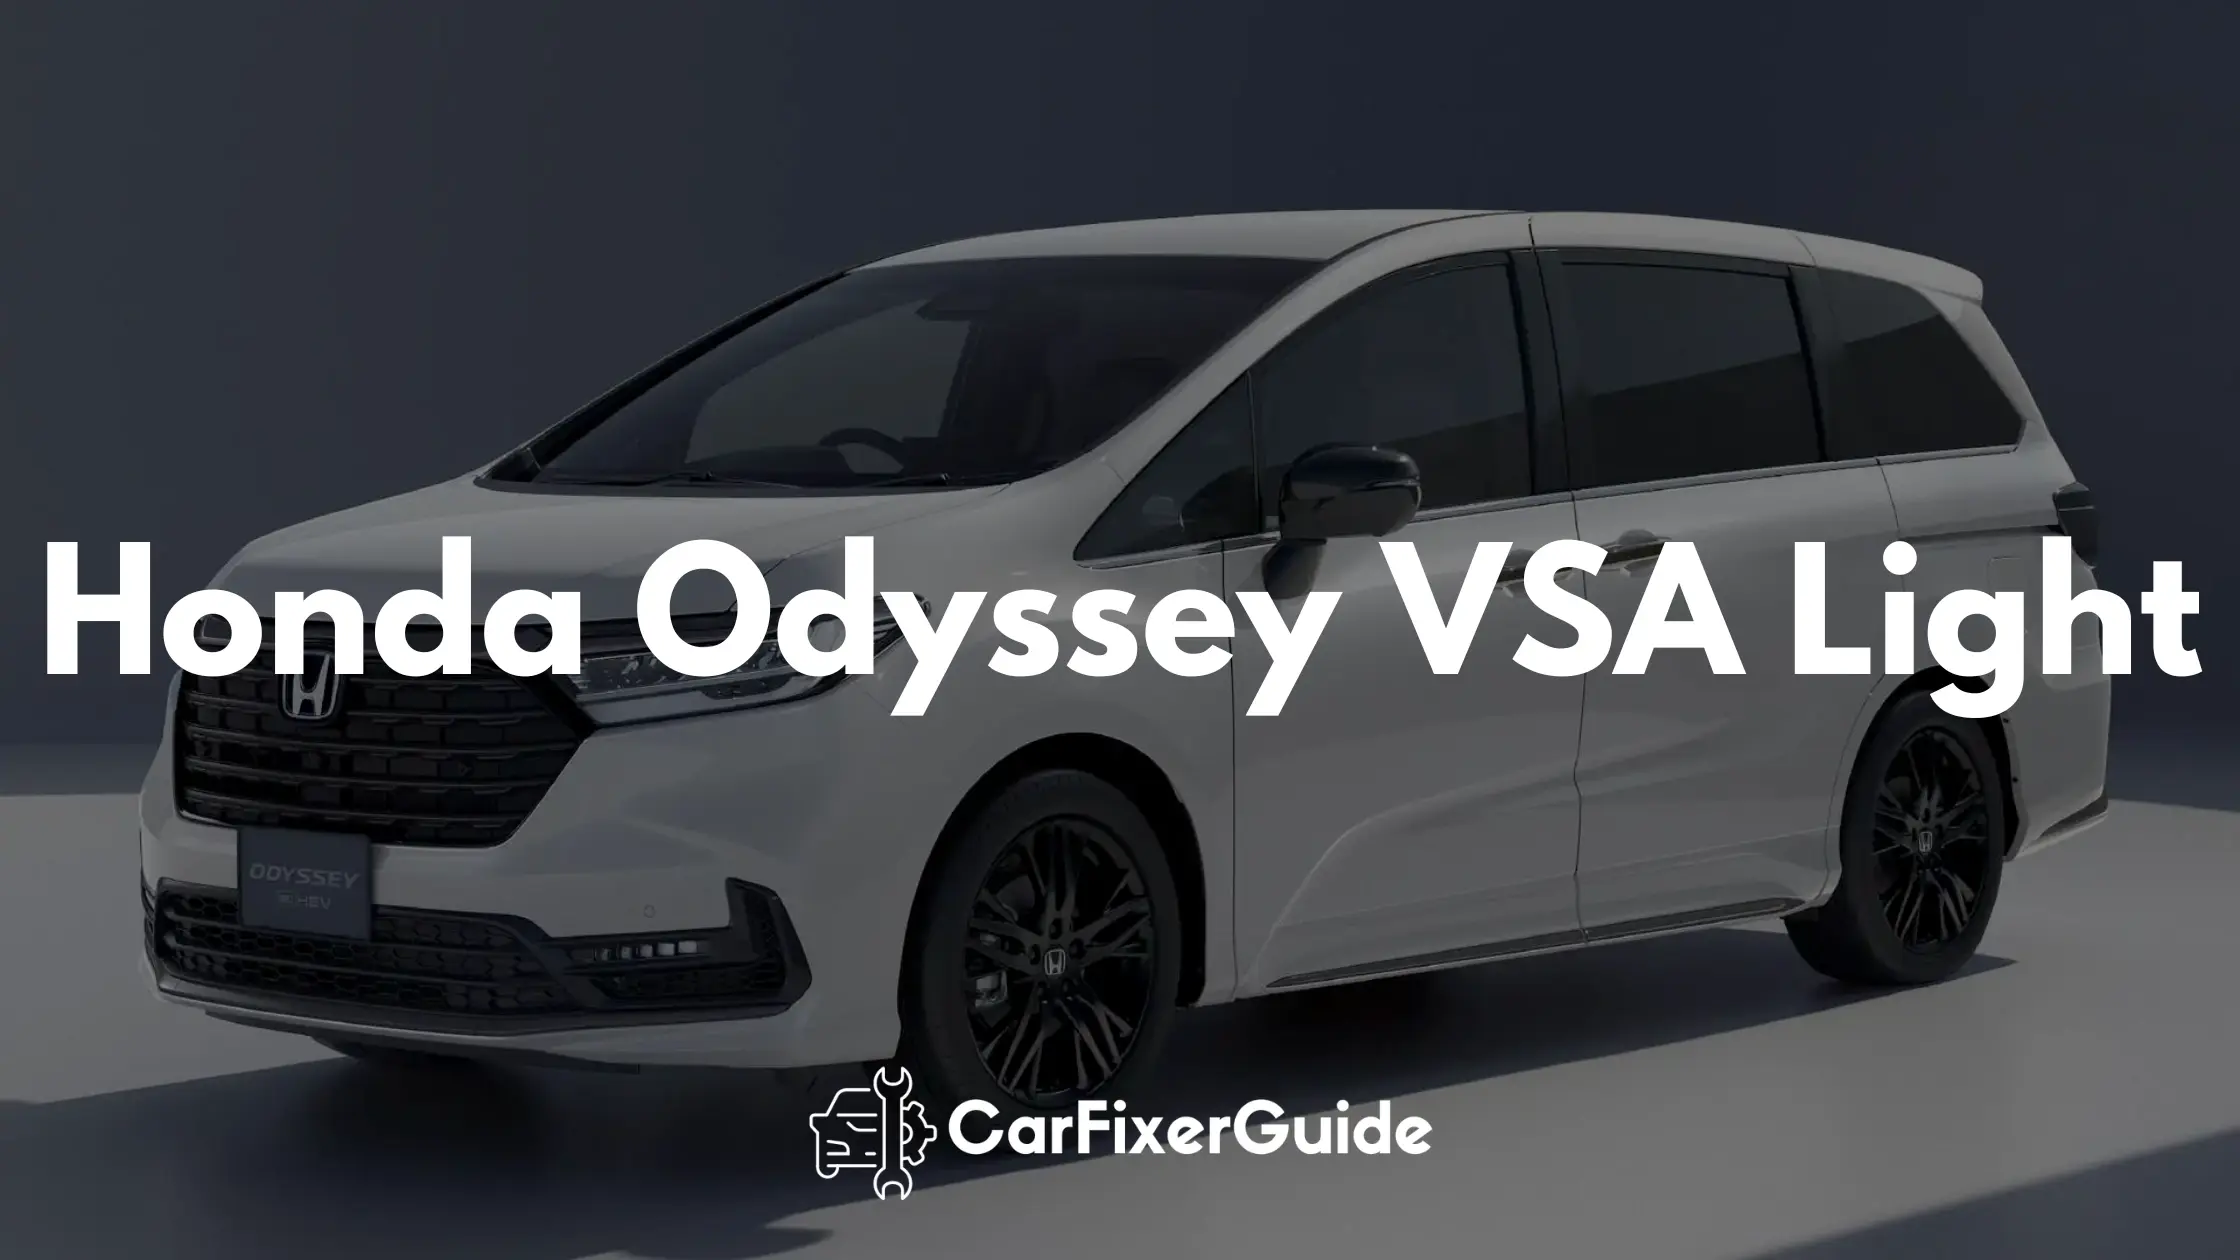 Honda Odyssey VSA Light